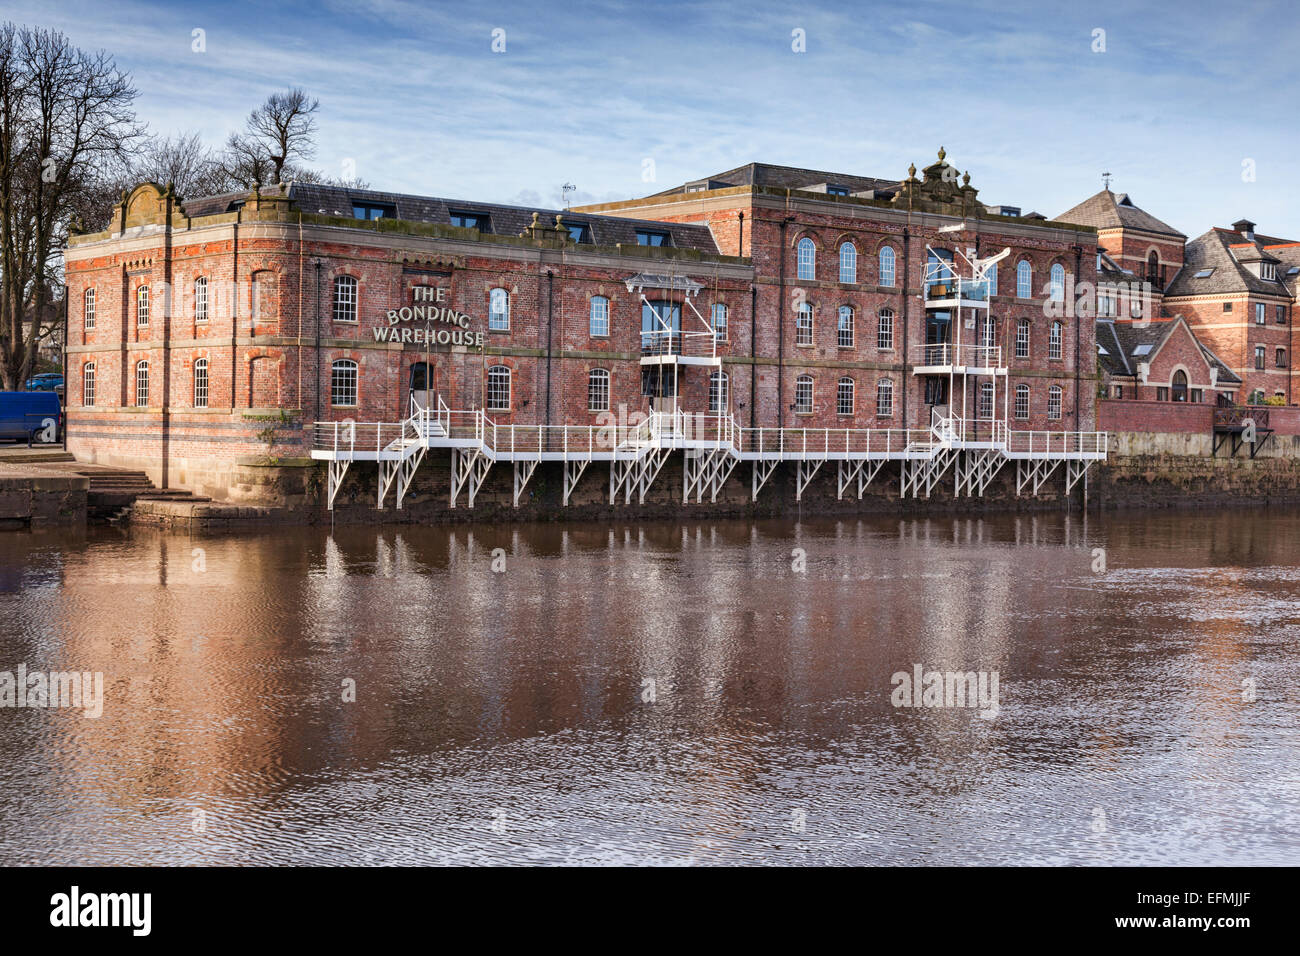 Entrepôt d'architecture traditionnelle, sur les rives de la rivière Ouse à York, North Yorkshire, Angleterre, maintenant converti Banque D'Images